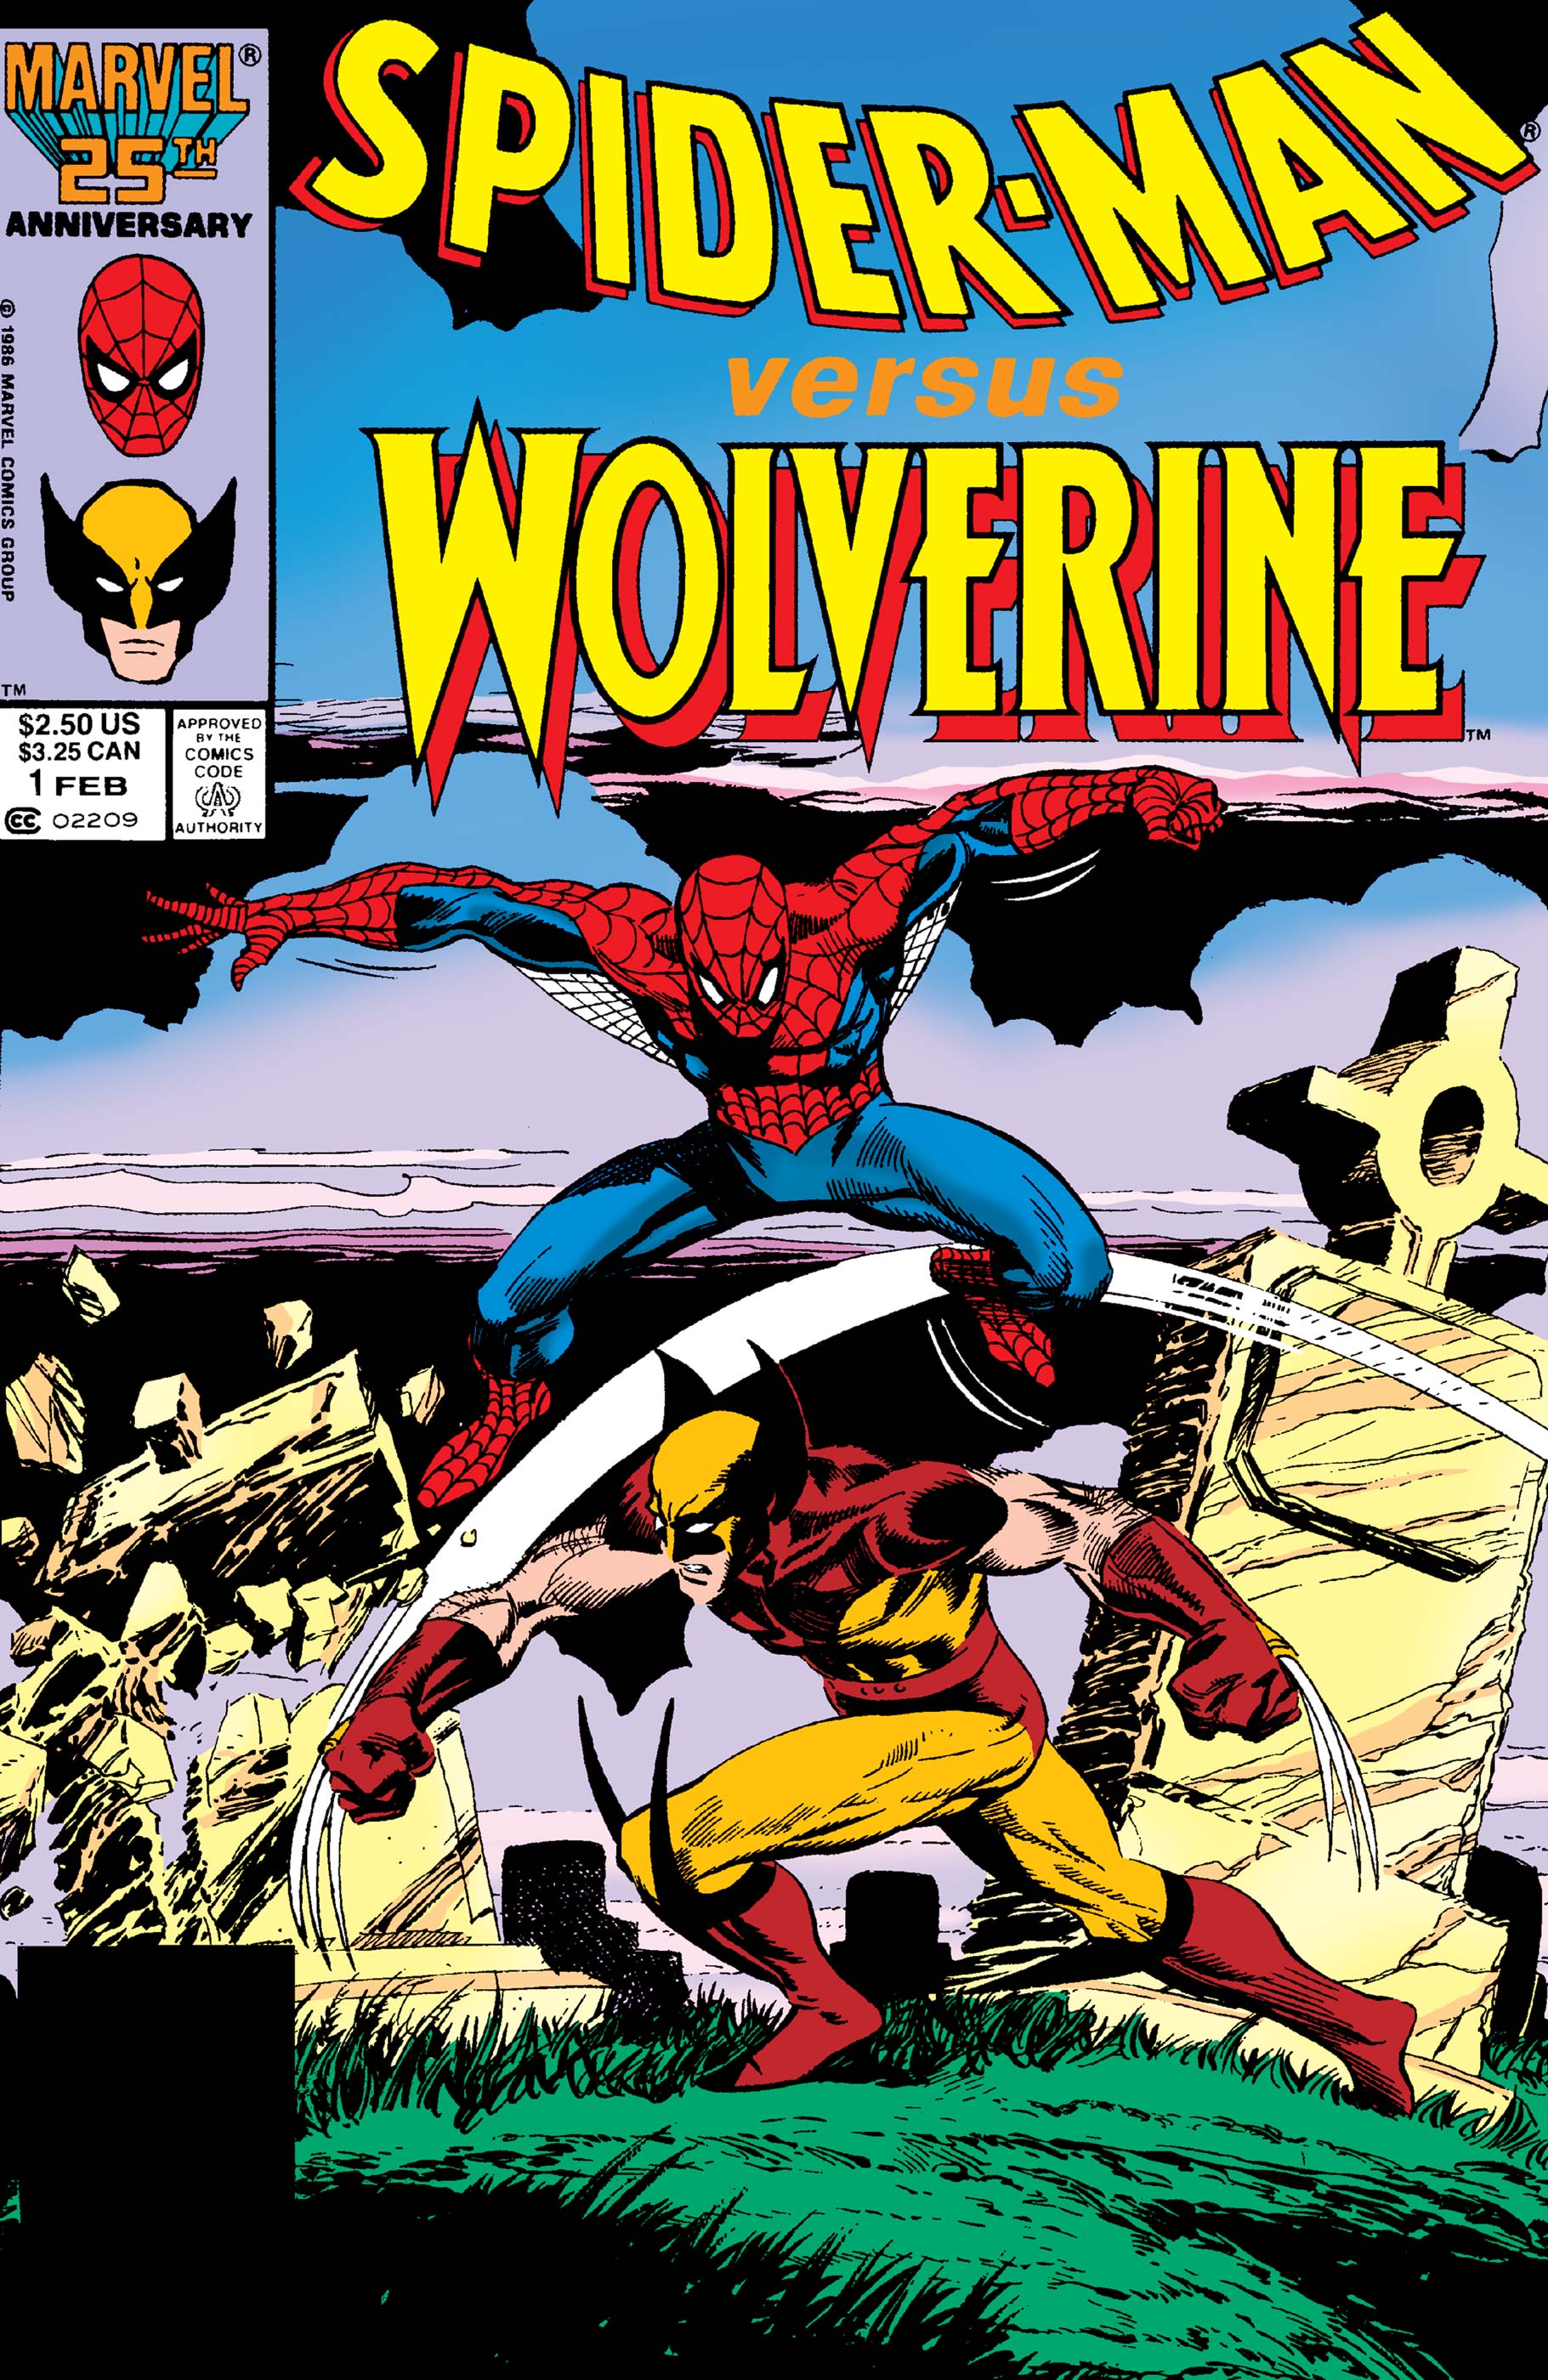 Spider man versus wolverine